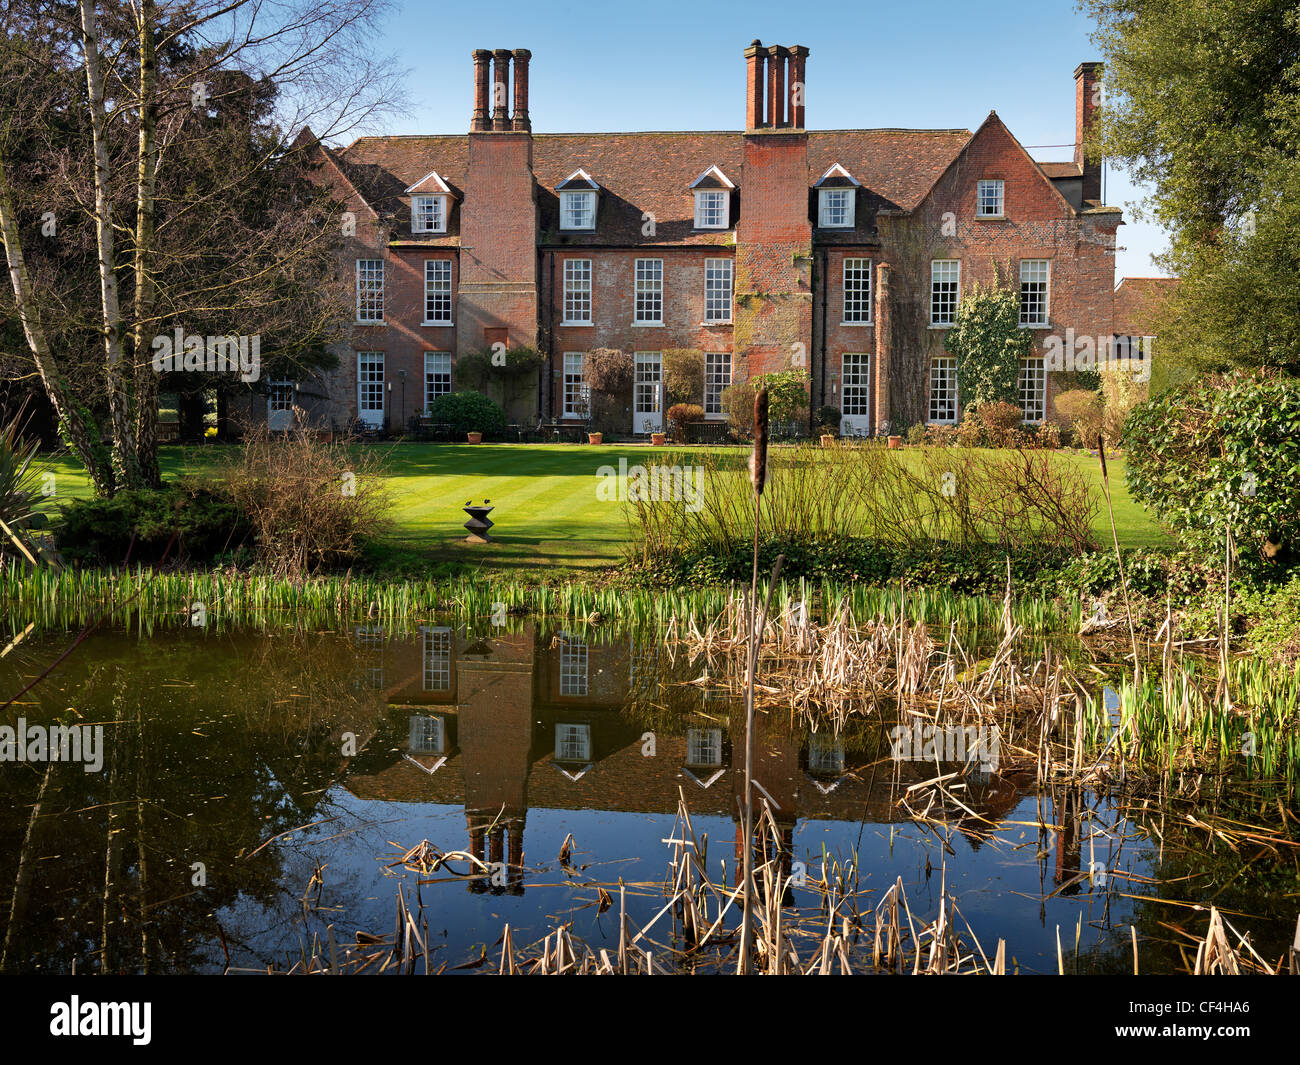 La parte trasera de Hintlesham Hall, un impresionante grado isabelino del siglo XVI que enumeré Country House Hotel, reflejadas en un estanque en la Foto de stock